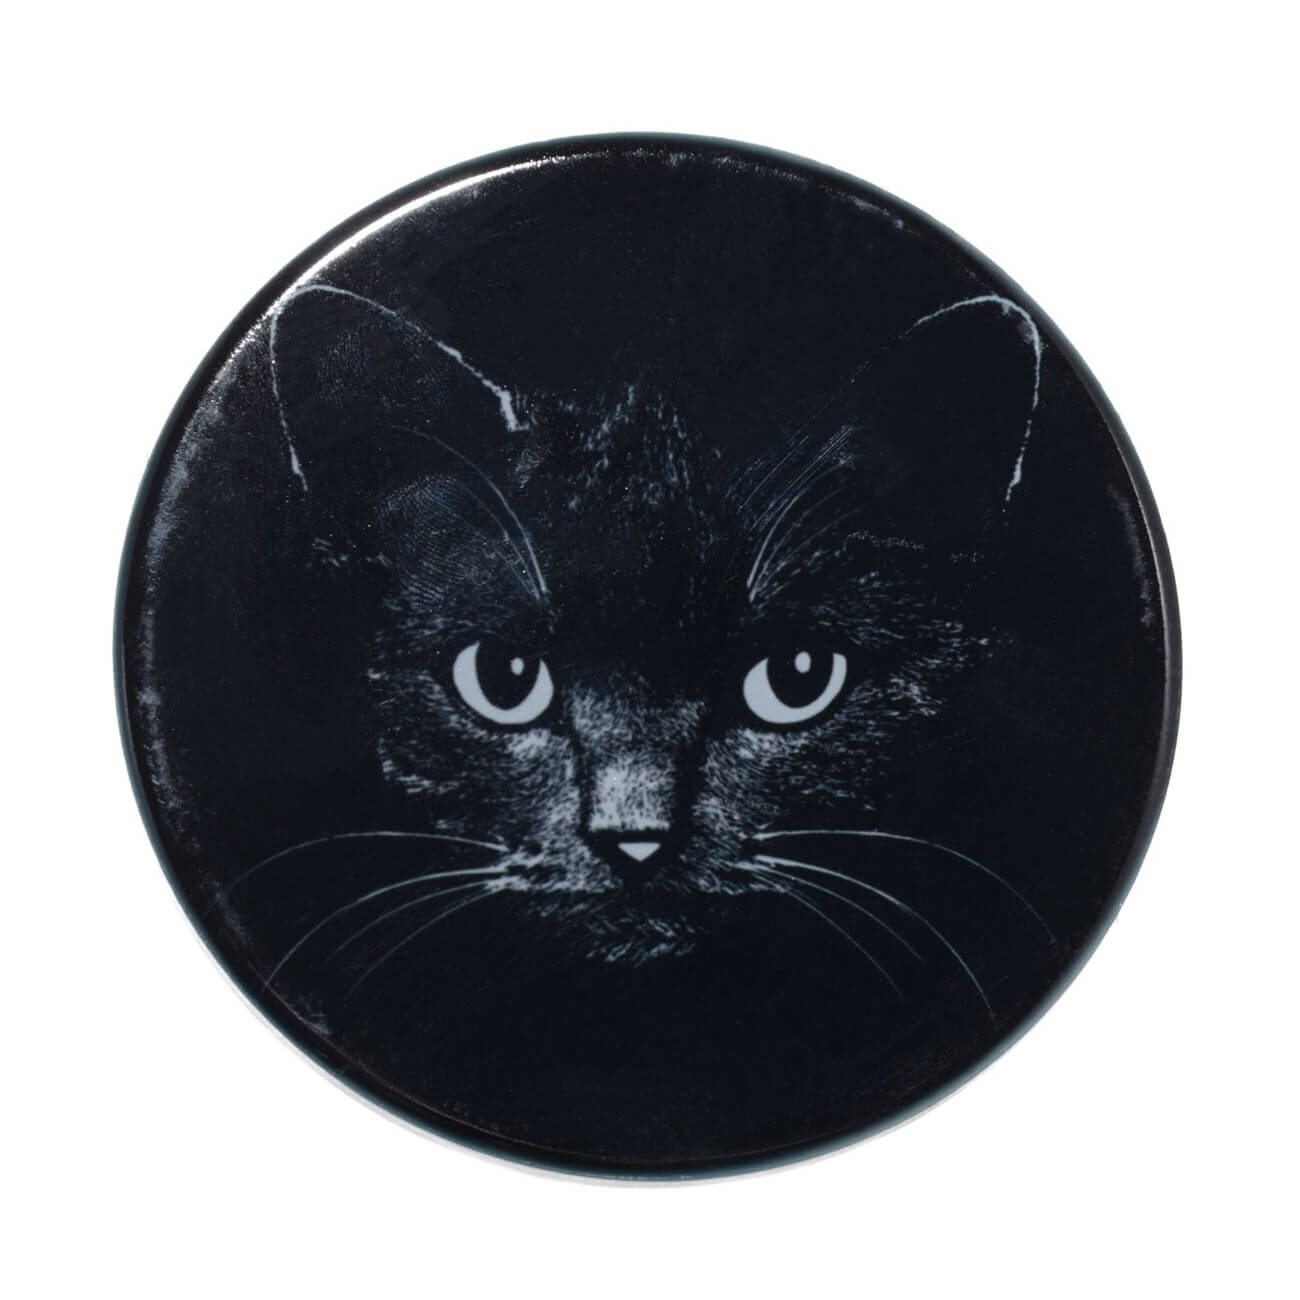 Подставка под кружку, 11x11 см, керамика/пробка, круглая, черная, Ночной кот, Cat night сувенир керамика подставка под кольца